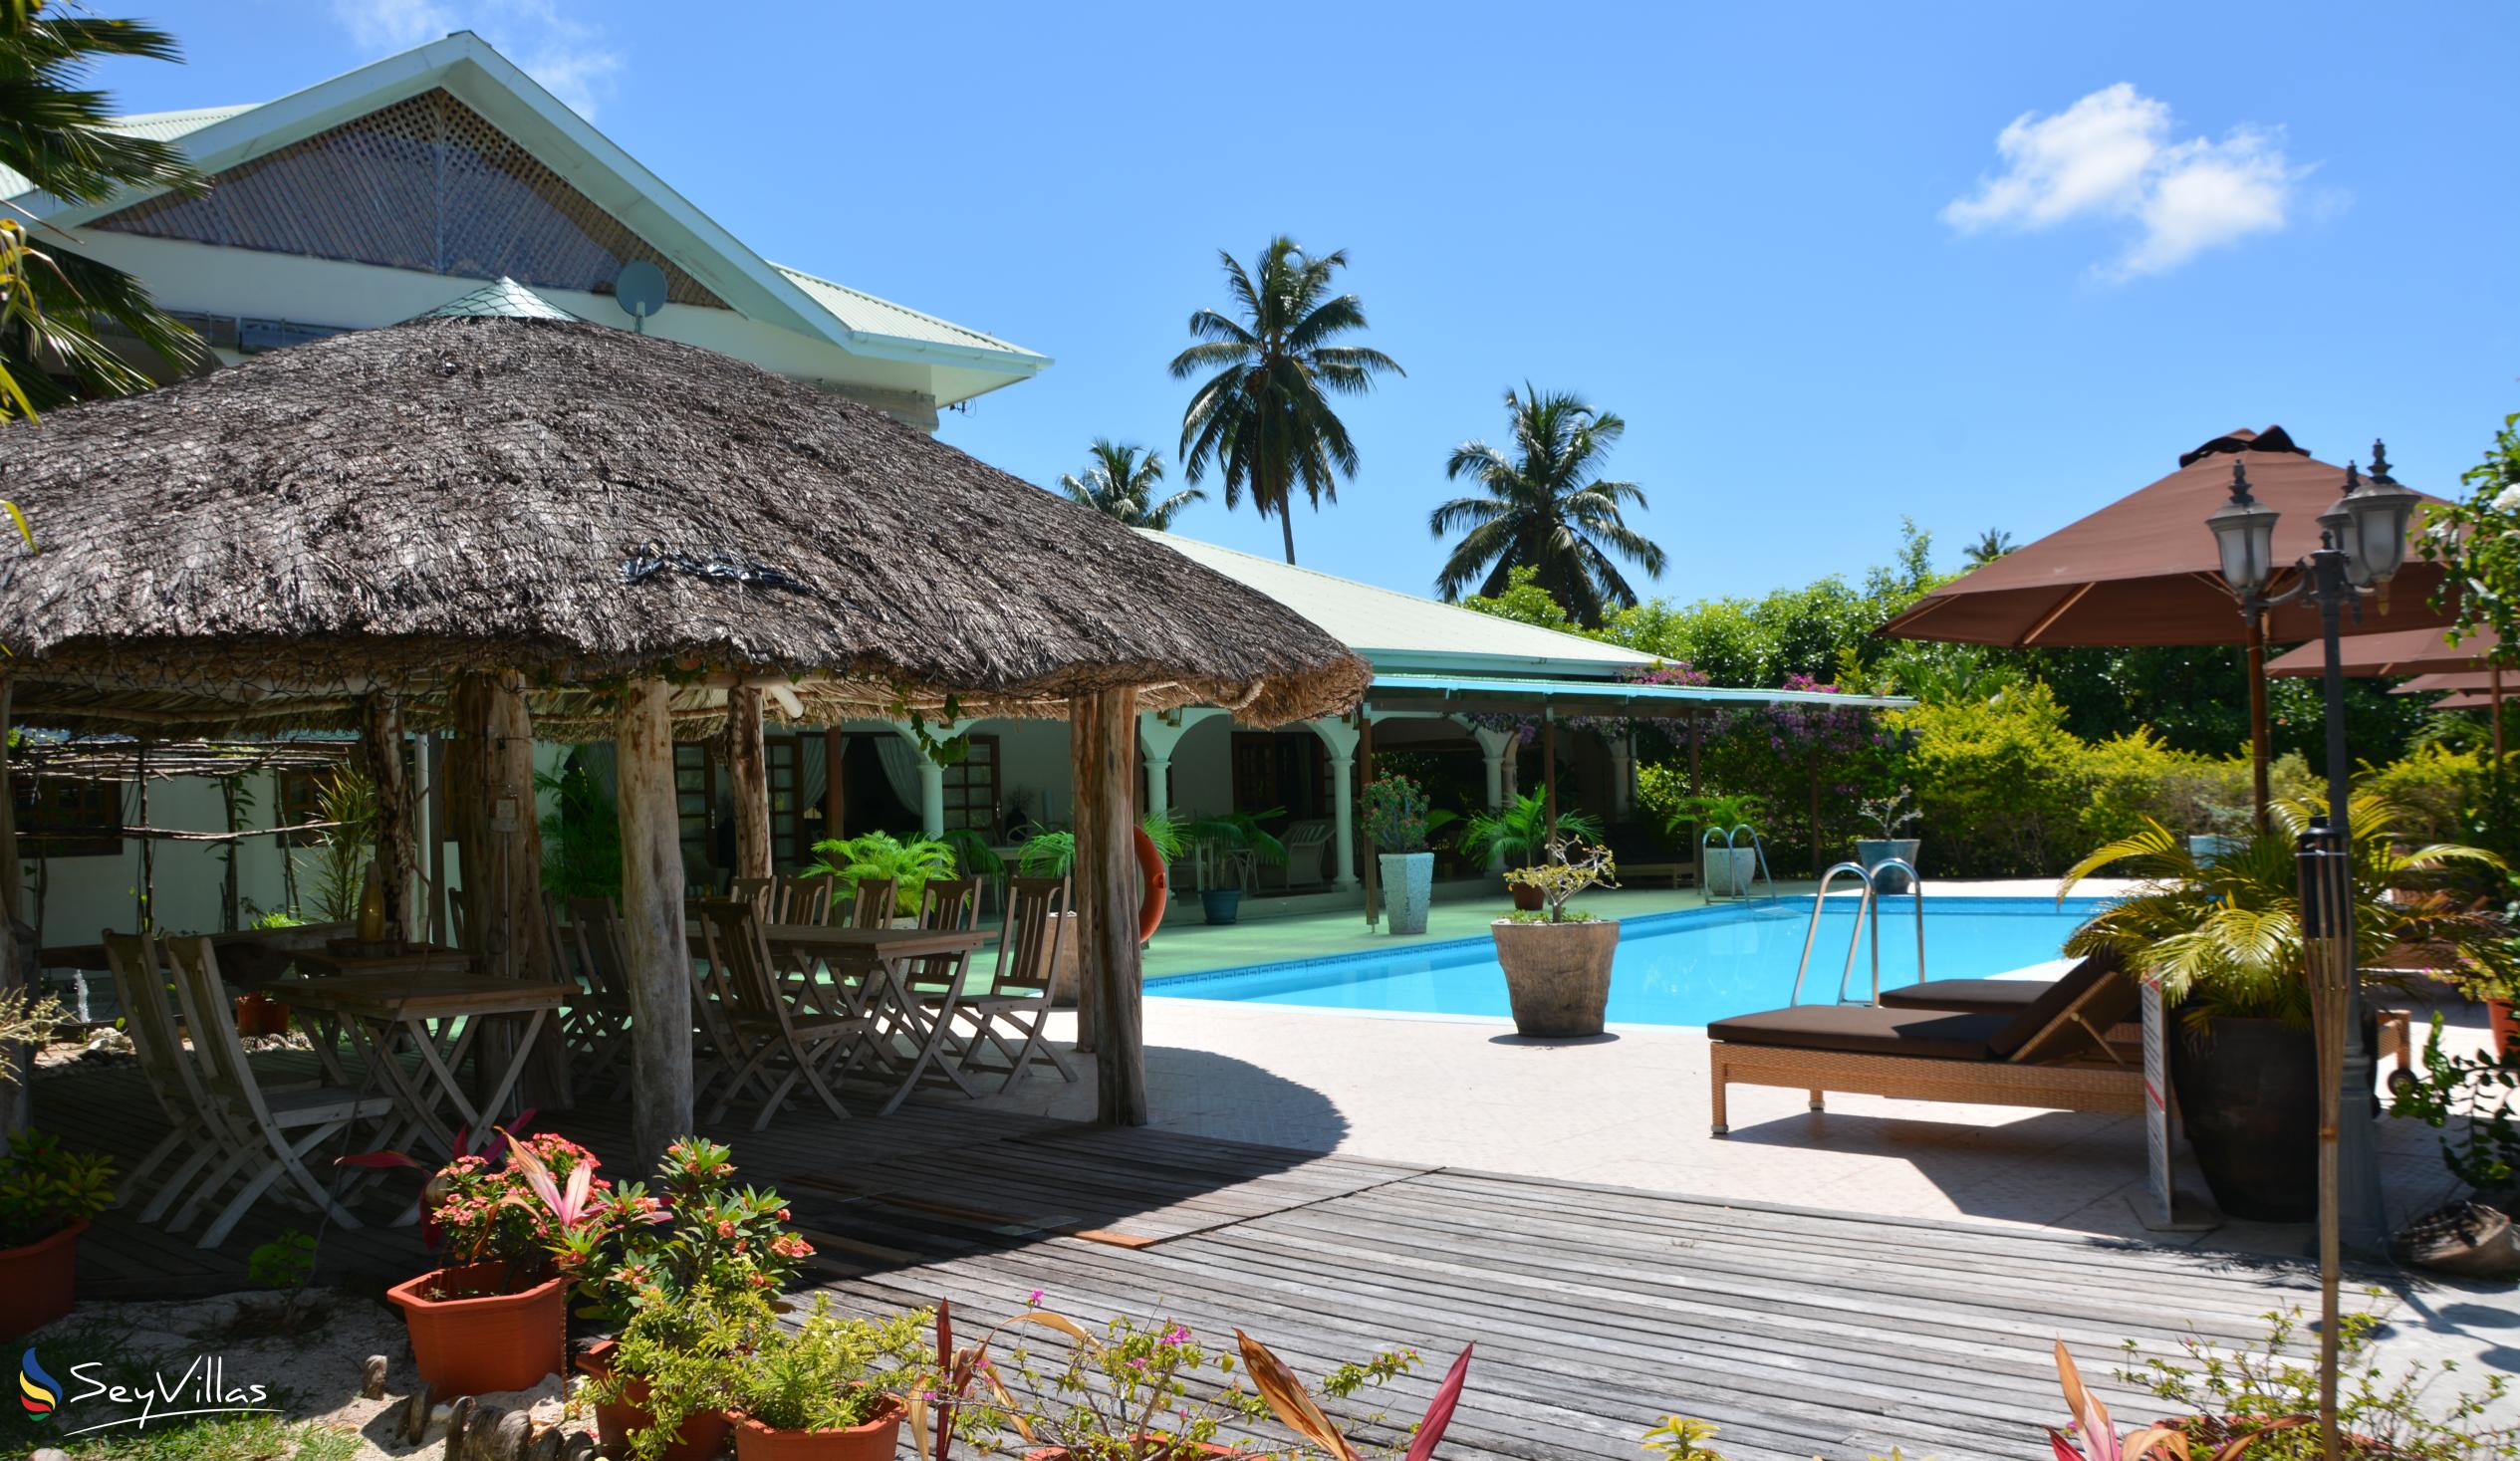 Foto 7: Villa de Cerf - Extérieur - Cerf Island (Seychelles)